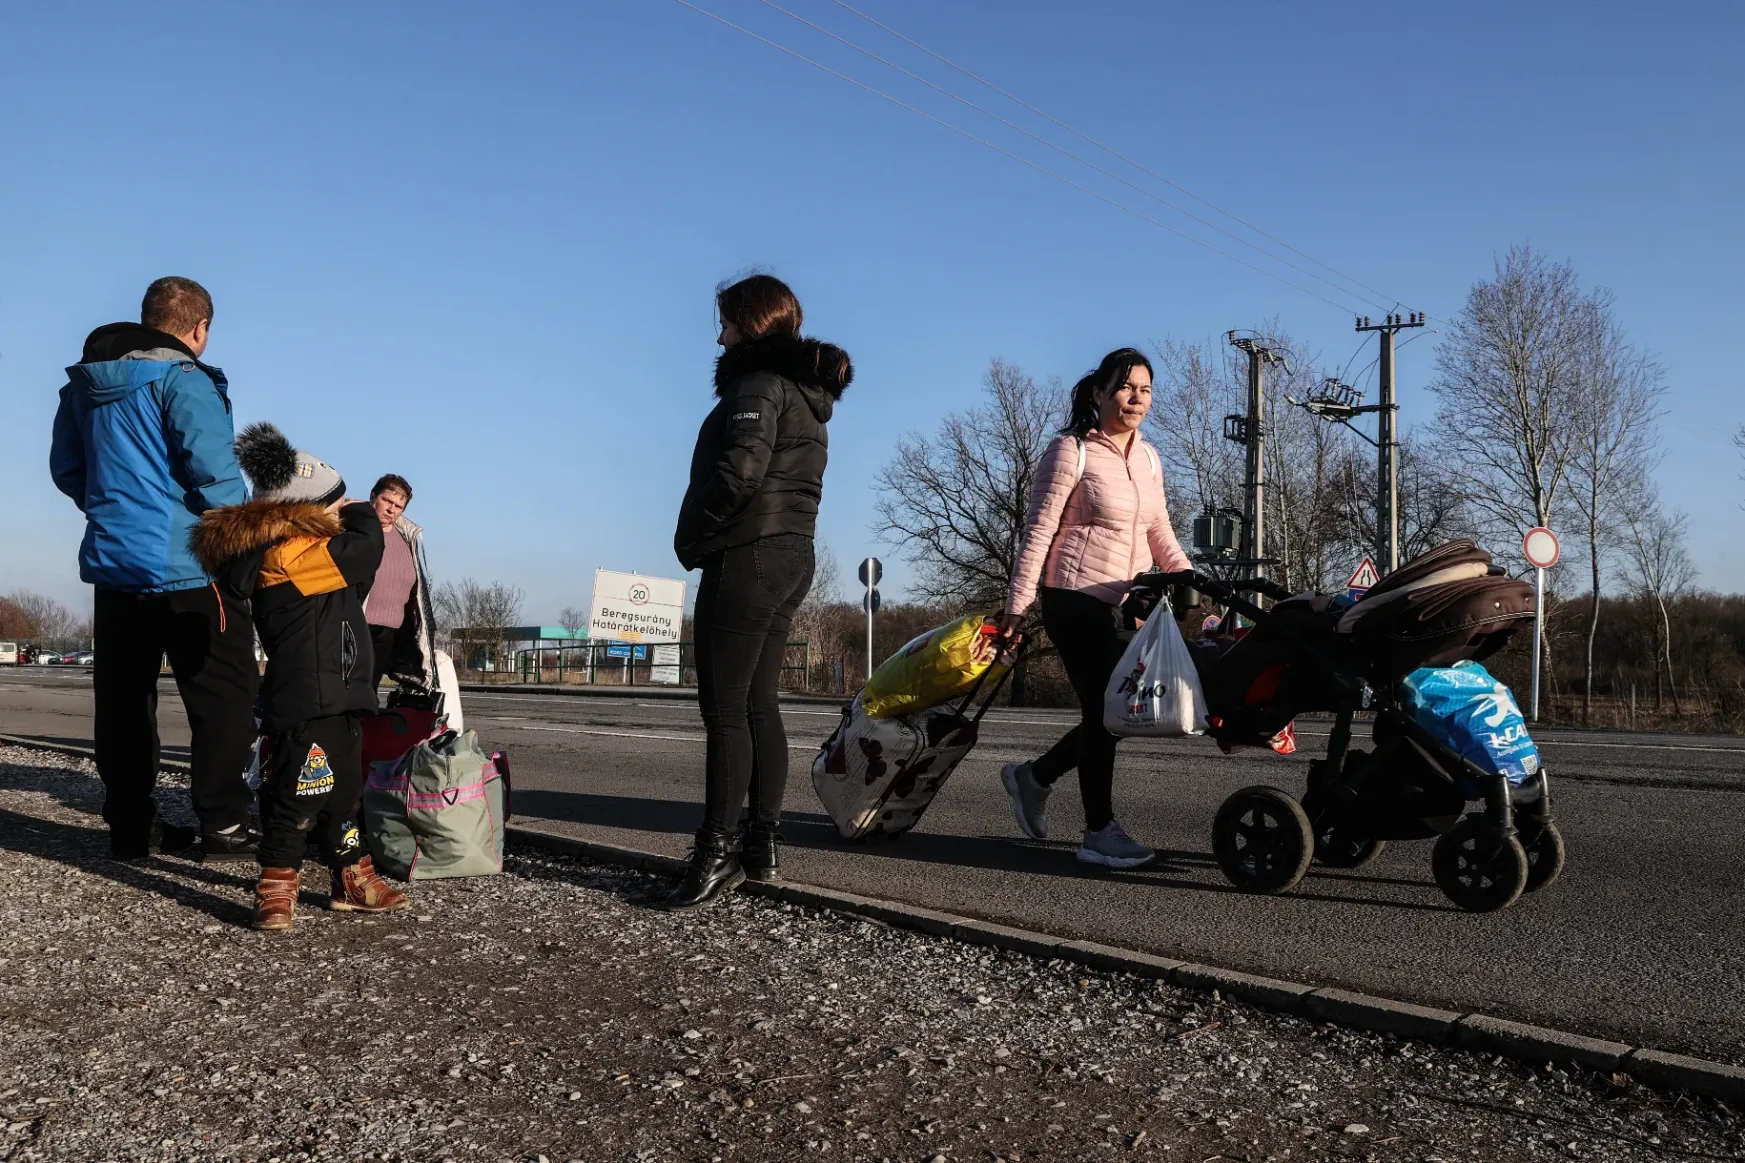 Alig maradnak itt az ukrajnai menekültek, alig kérnek segítséget az államtól, és azt is nehezen kapják meg